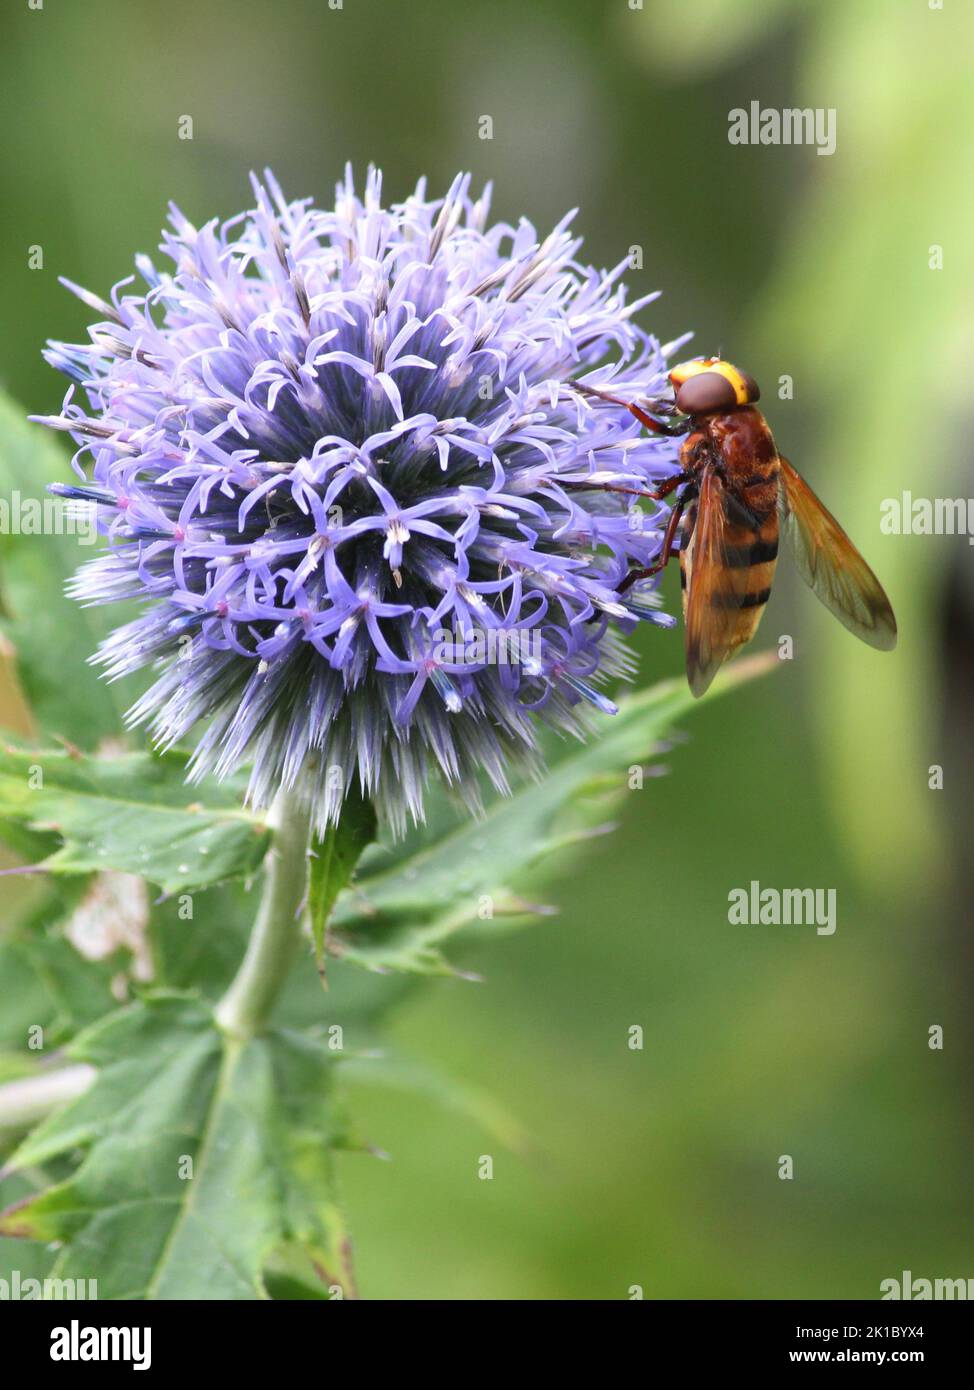 Hornet on flower Stock Photo